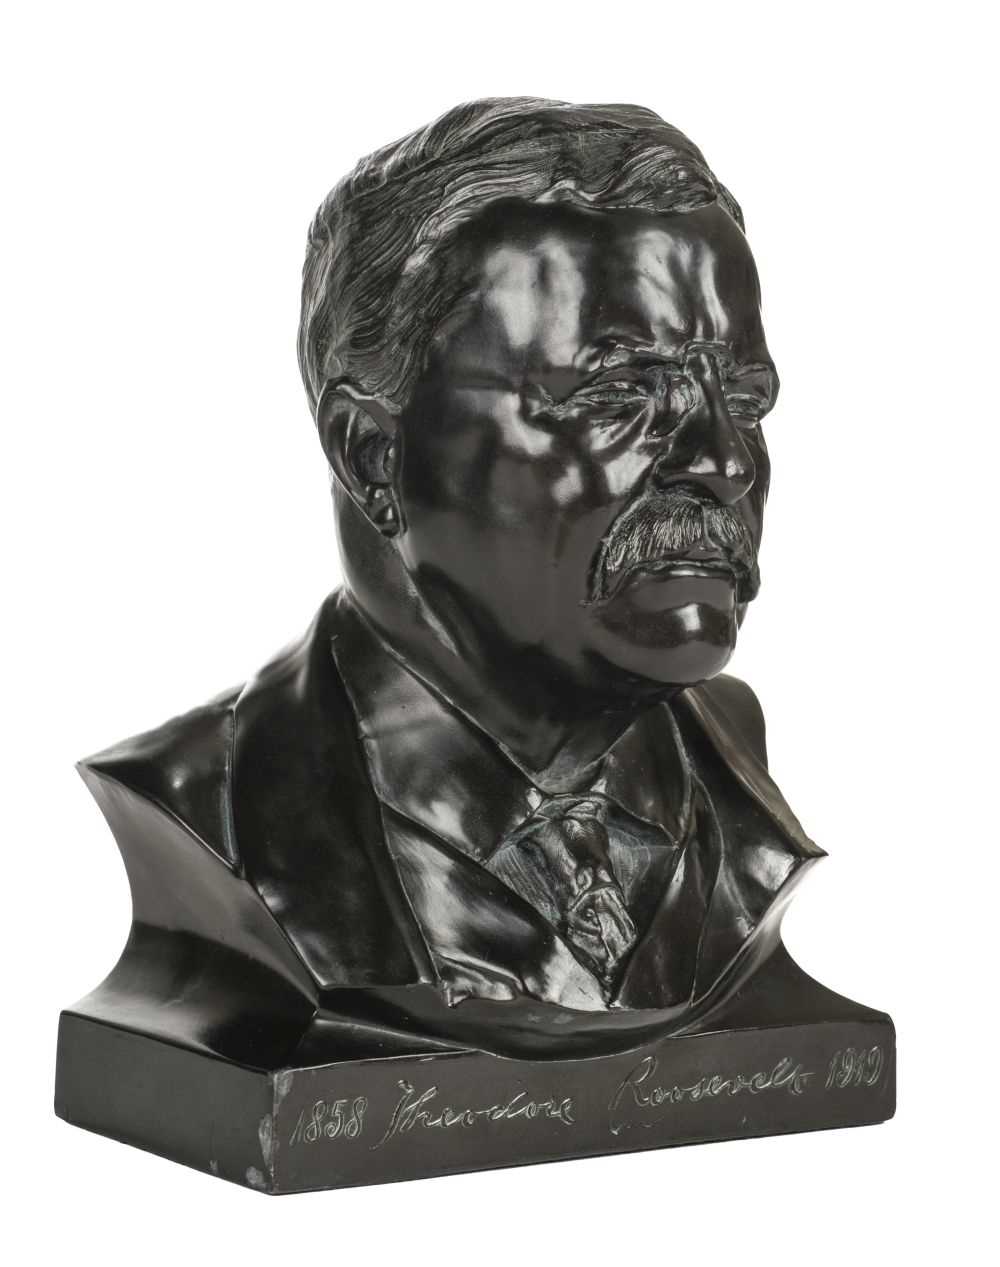 Lot 8 - Bust of Roosevelt